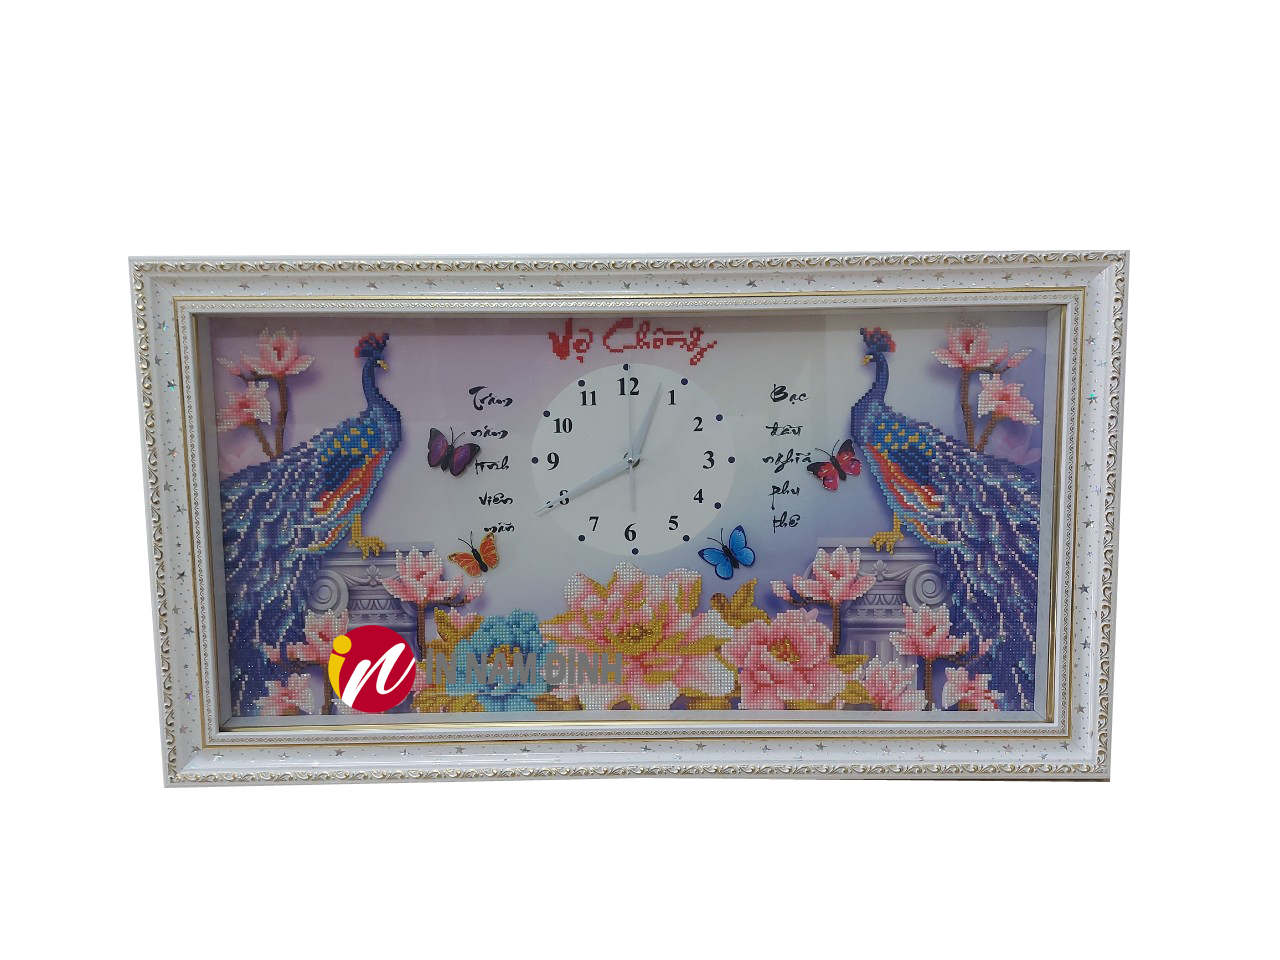 Ý nghĩa tranh treo đồng hồ chim công và hoa mẫu đơn trang trí tượng trưng cho tình nghĩa vợ chồng thủy chung viên mãn